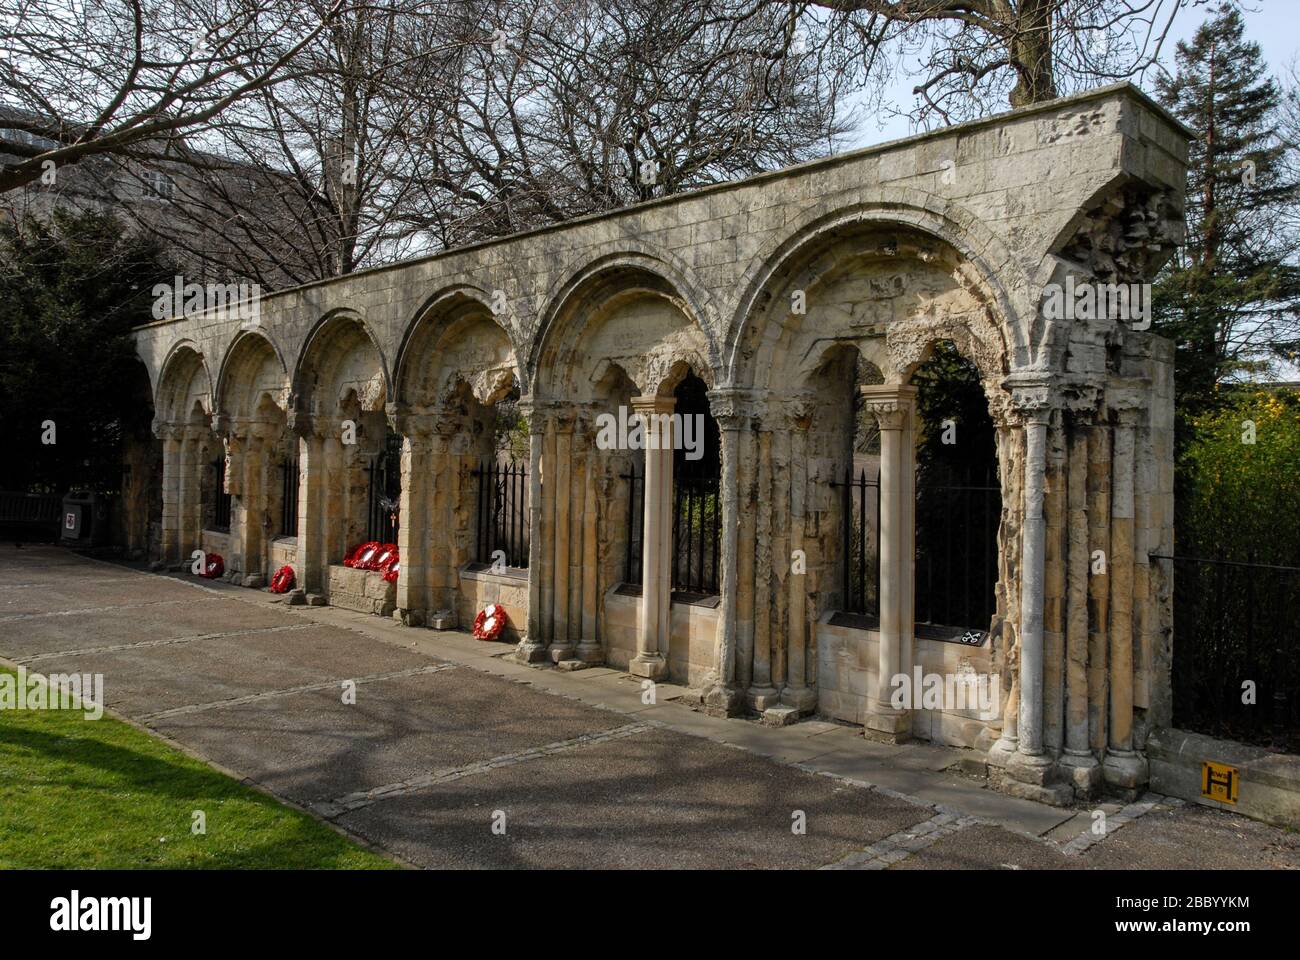 La parte muraria del Palazzo medievale degli Arcivescovi nel Dean's Park, York. E' un muro commemorativo della 2nd Division (Army). Yorkshire, Gran Bretagna Foto Stock